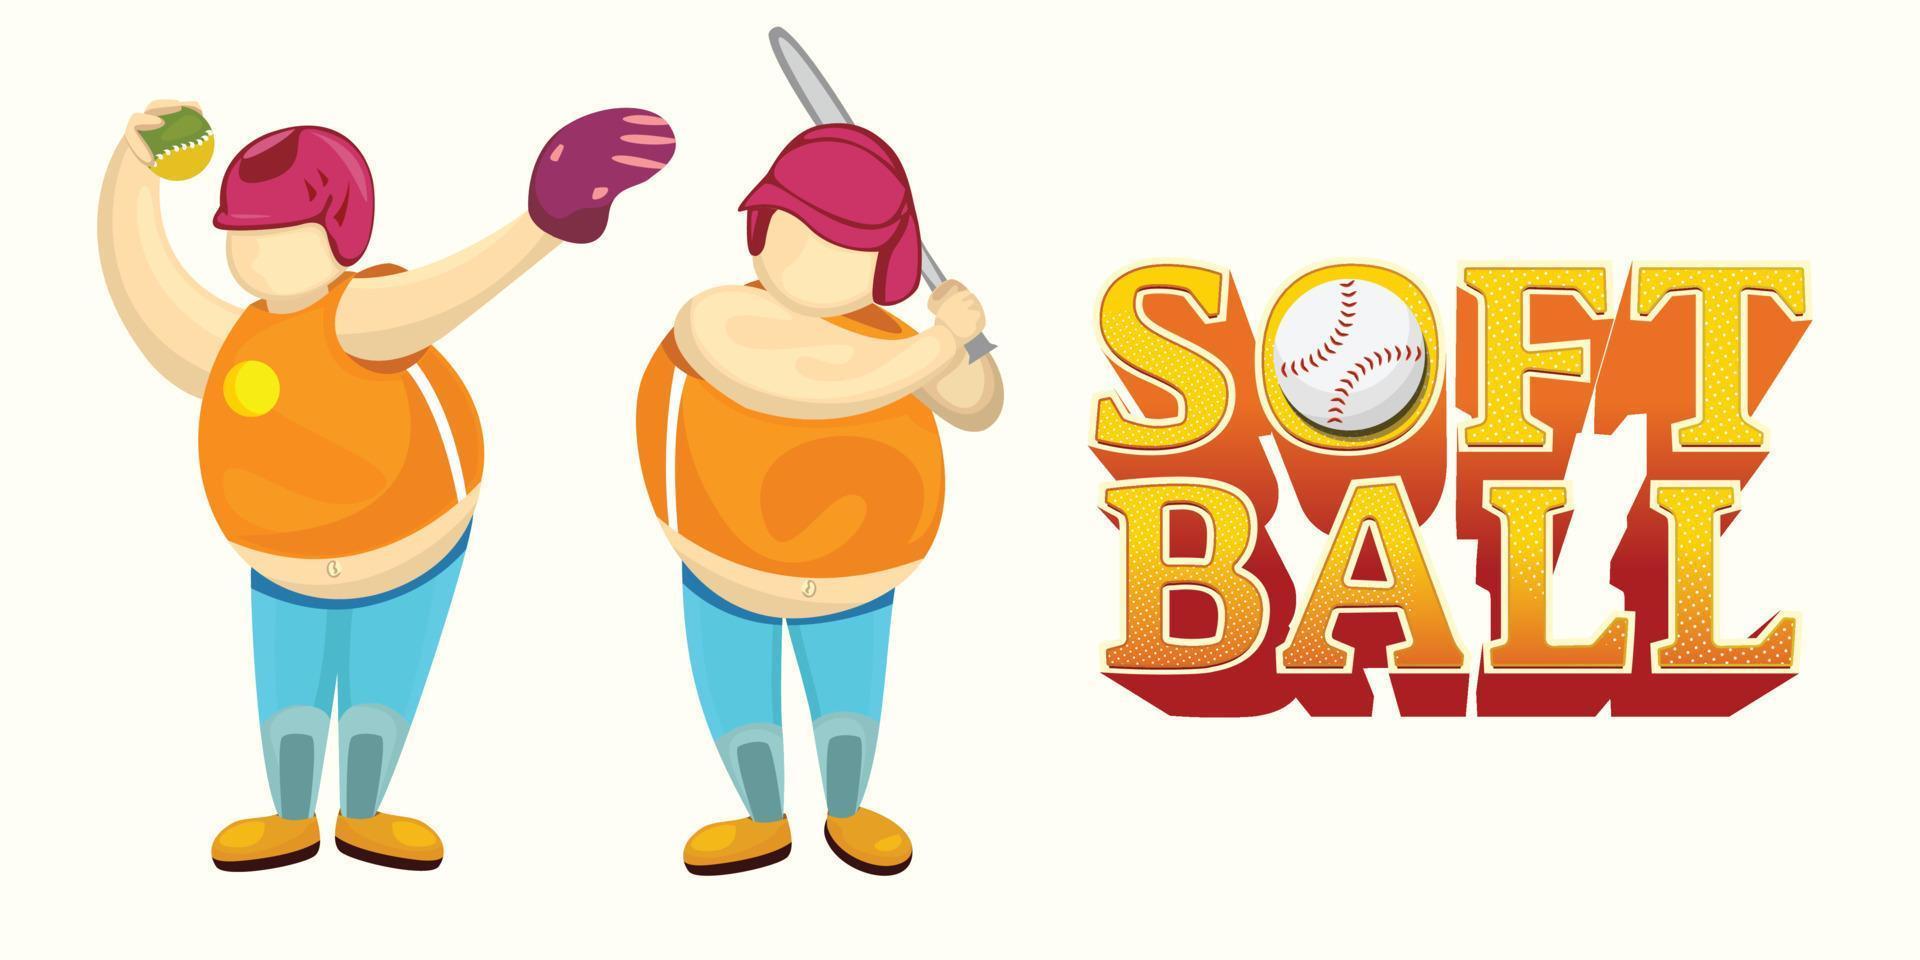 mallar, karaktärer och logotyper för softball, vektor premium